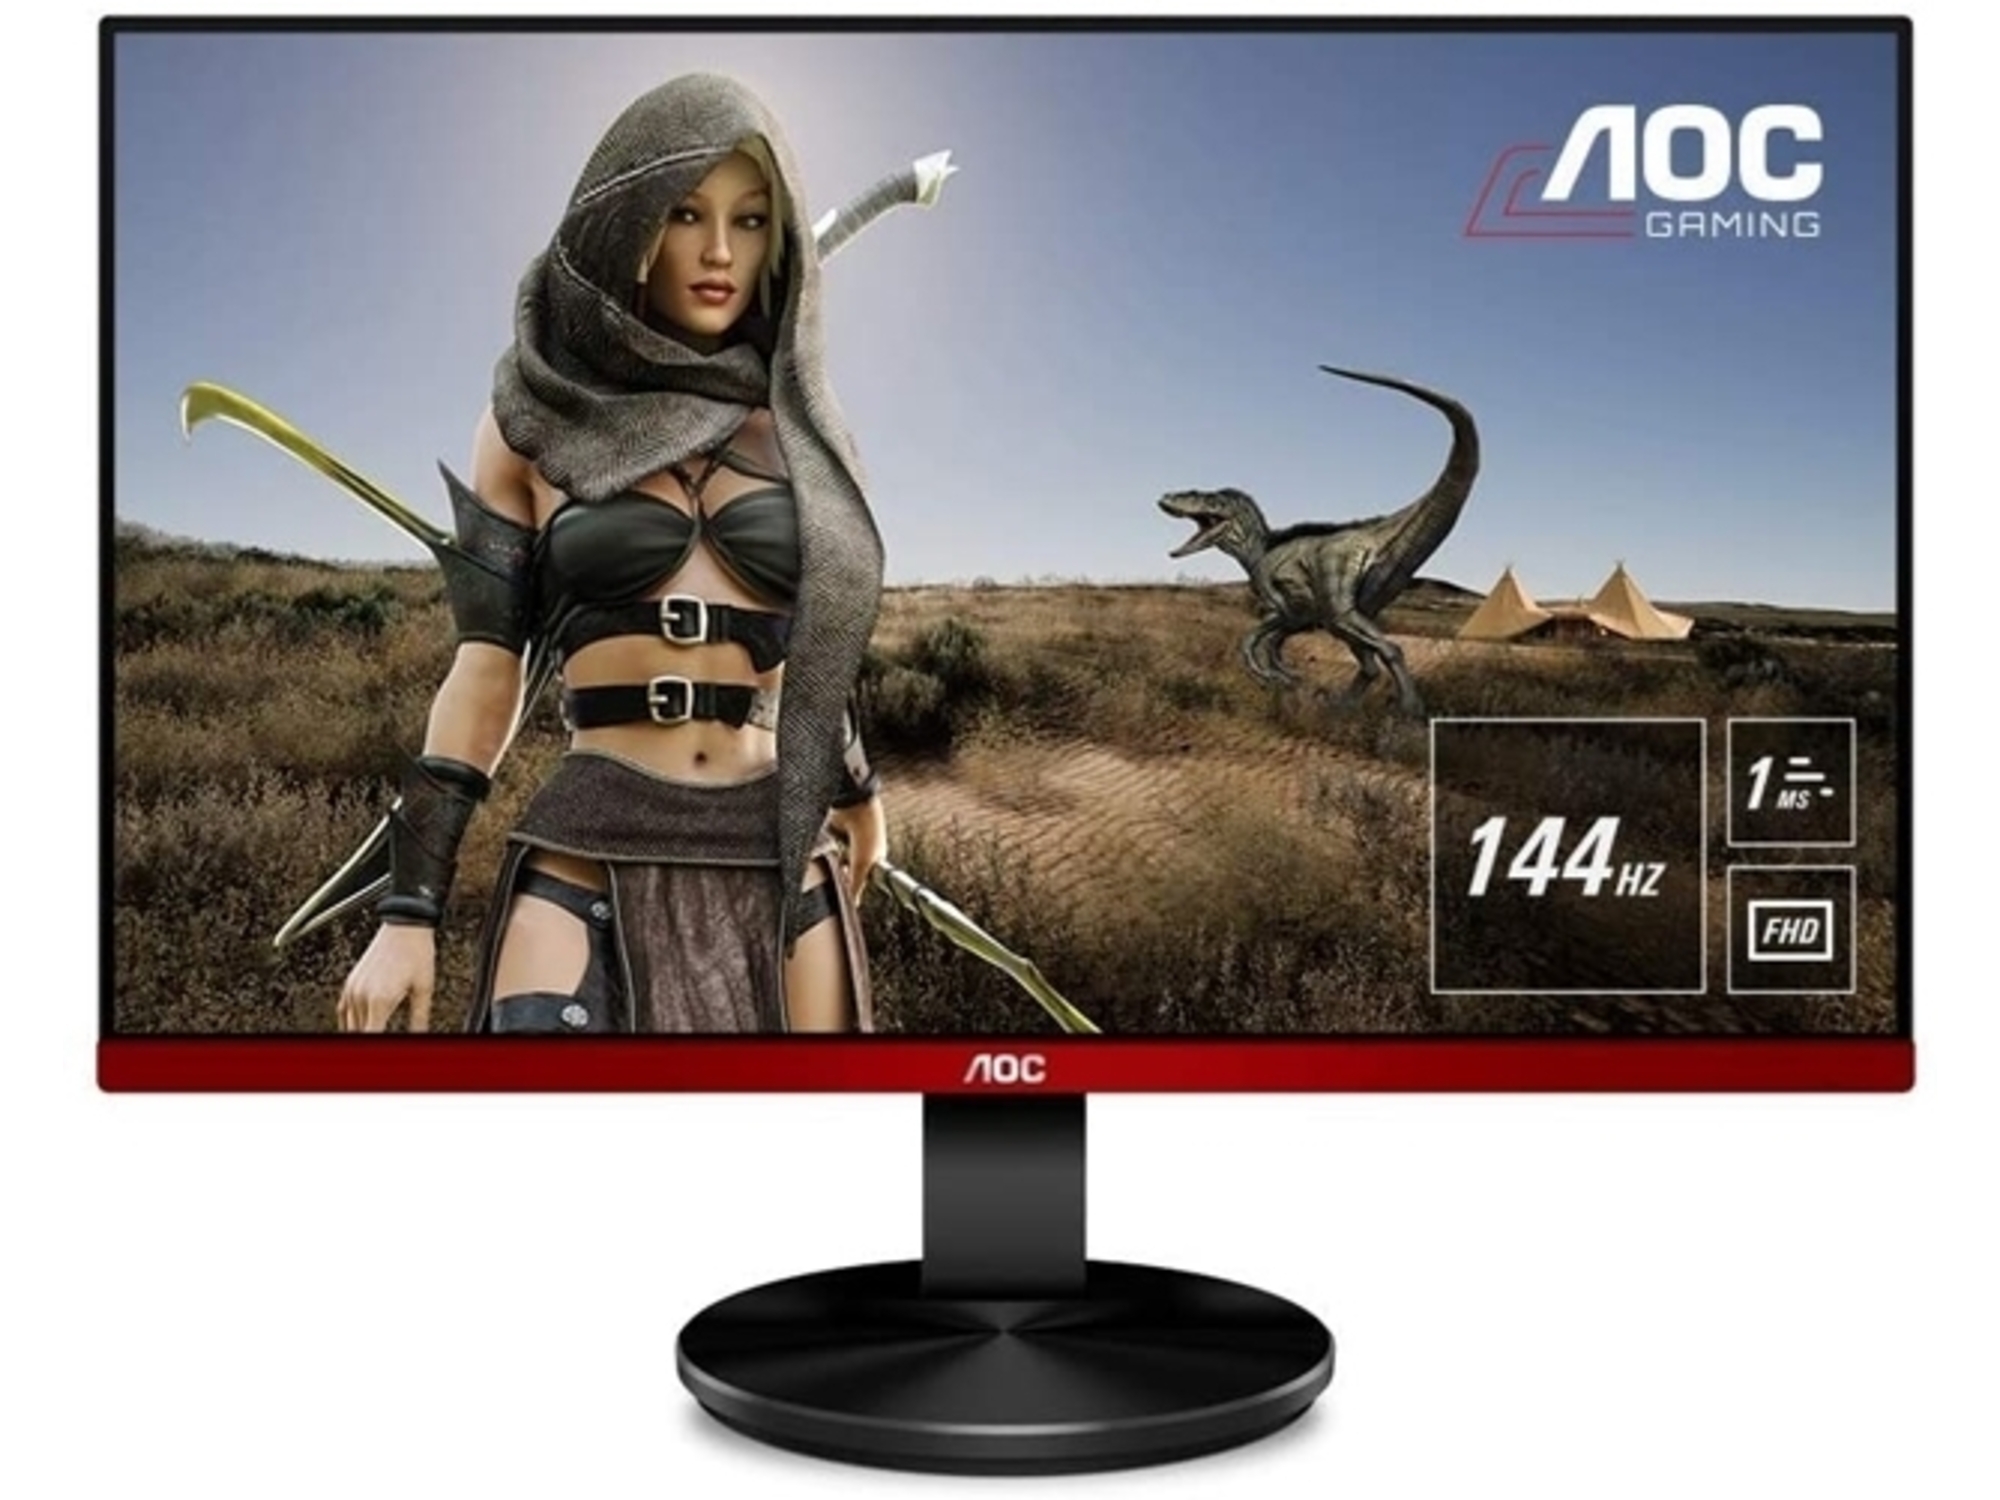 AOC GAMING LED monitor AOC G2490VXA (23.8', 144 Hz) Gaming